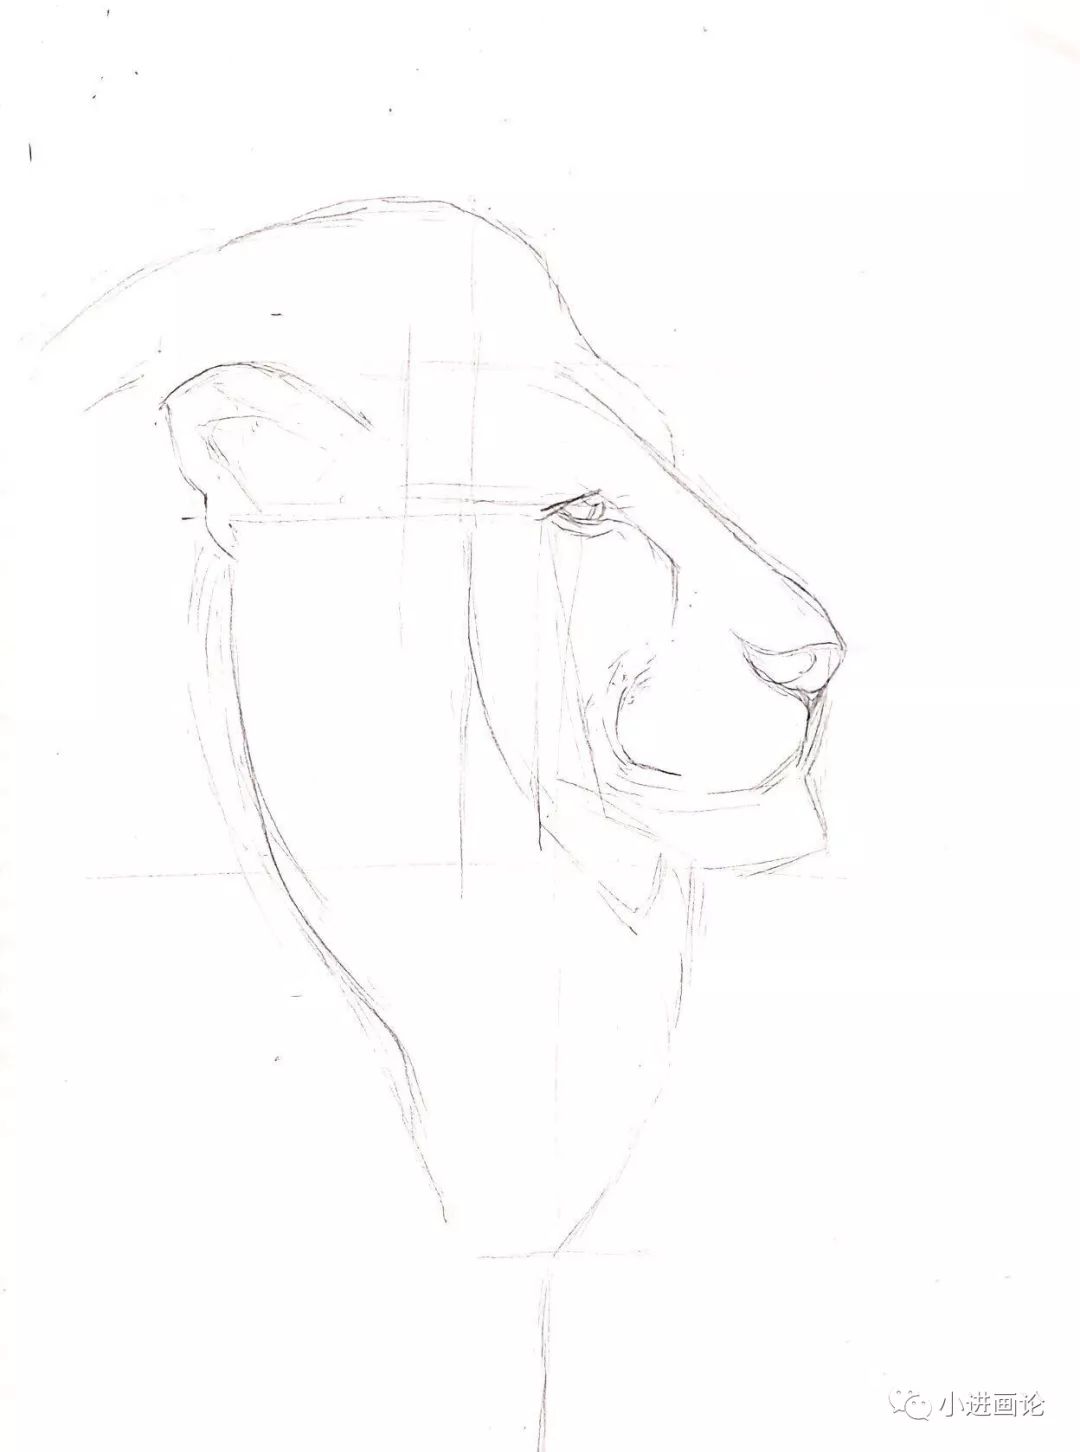 针管笔手绘画一头雄狮教你如何刻画动物毛发